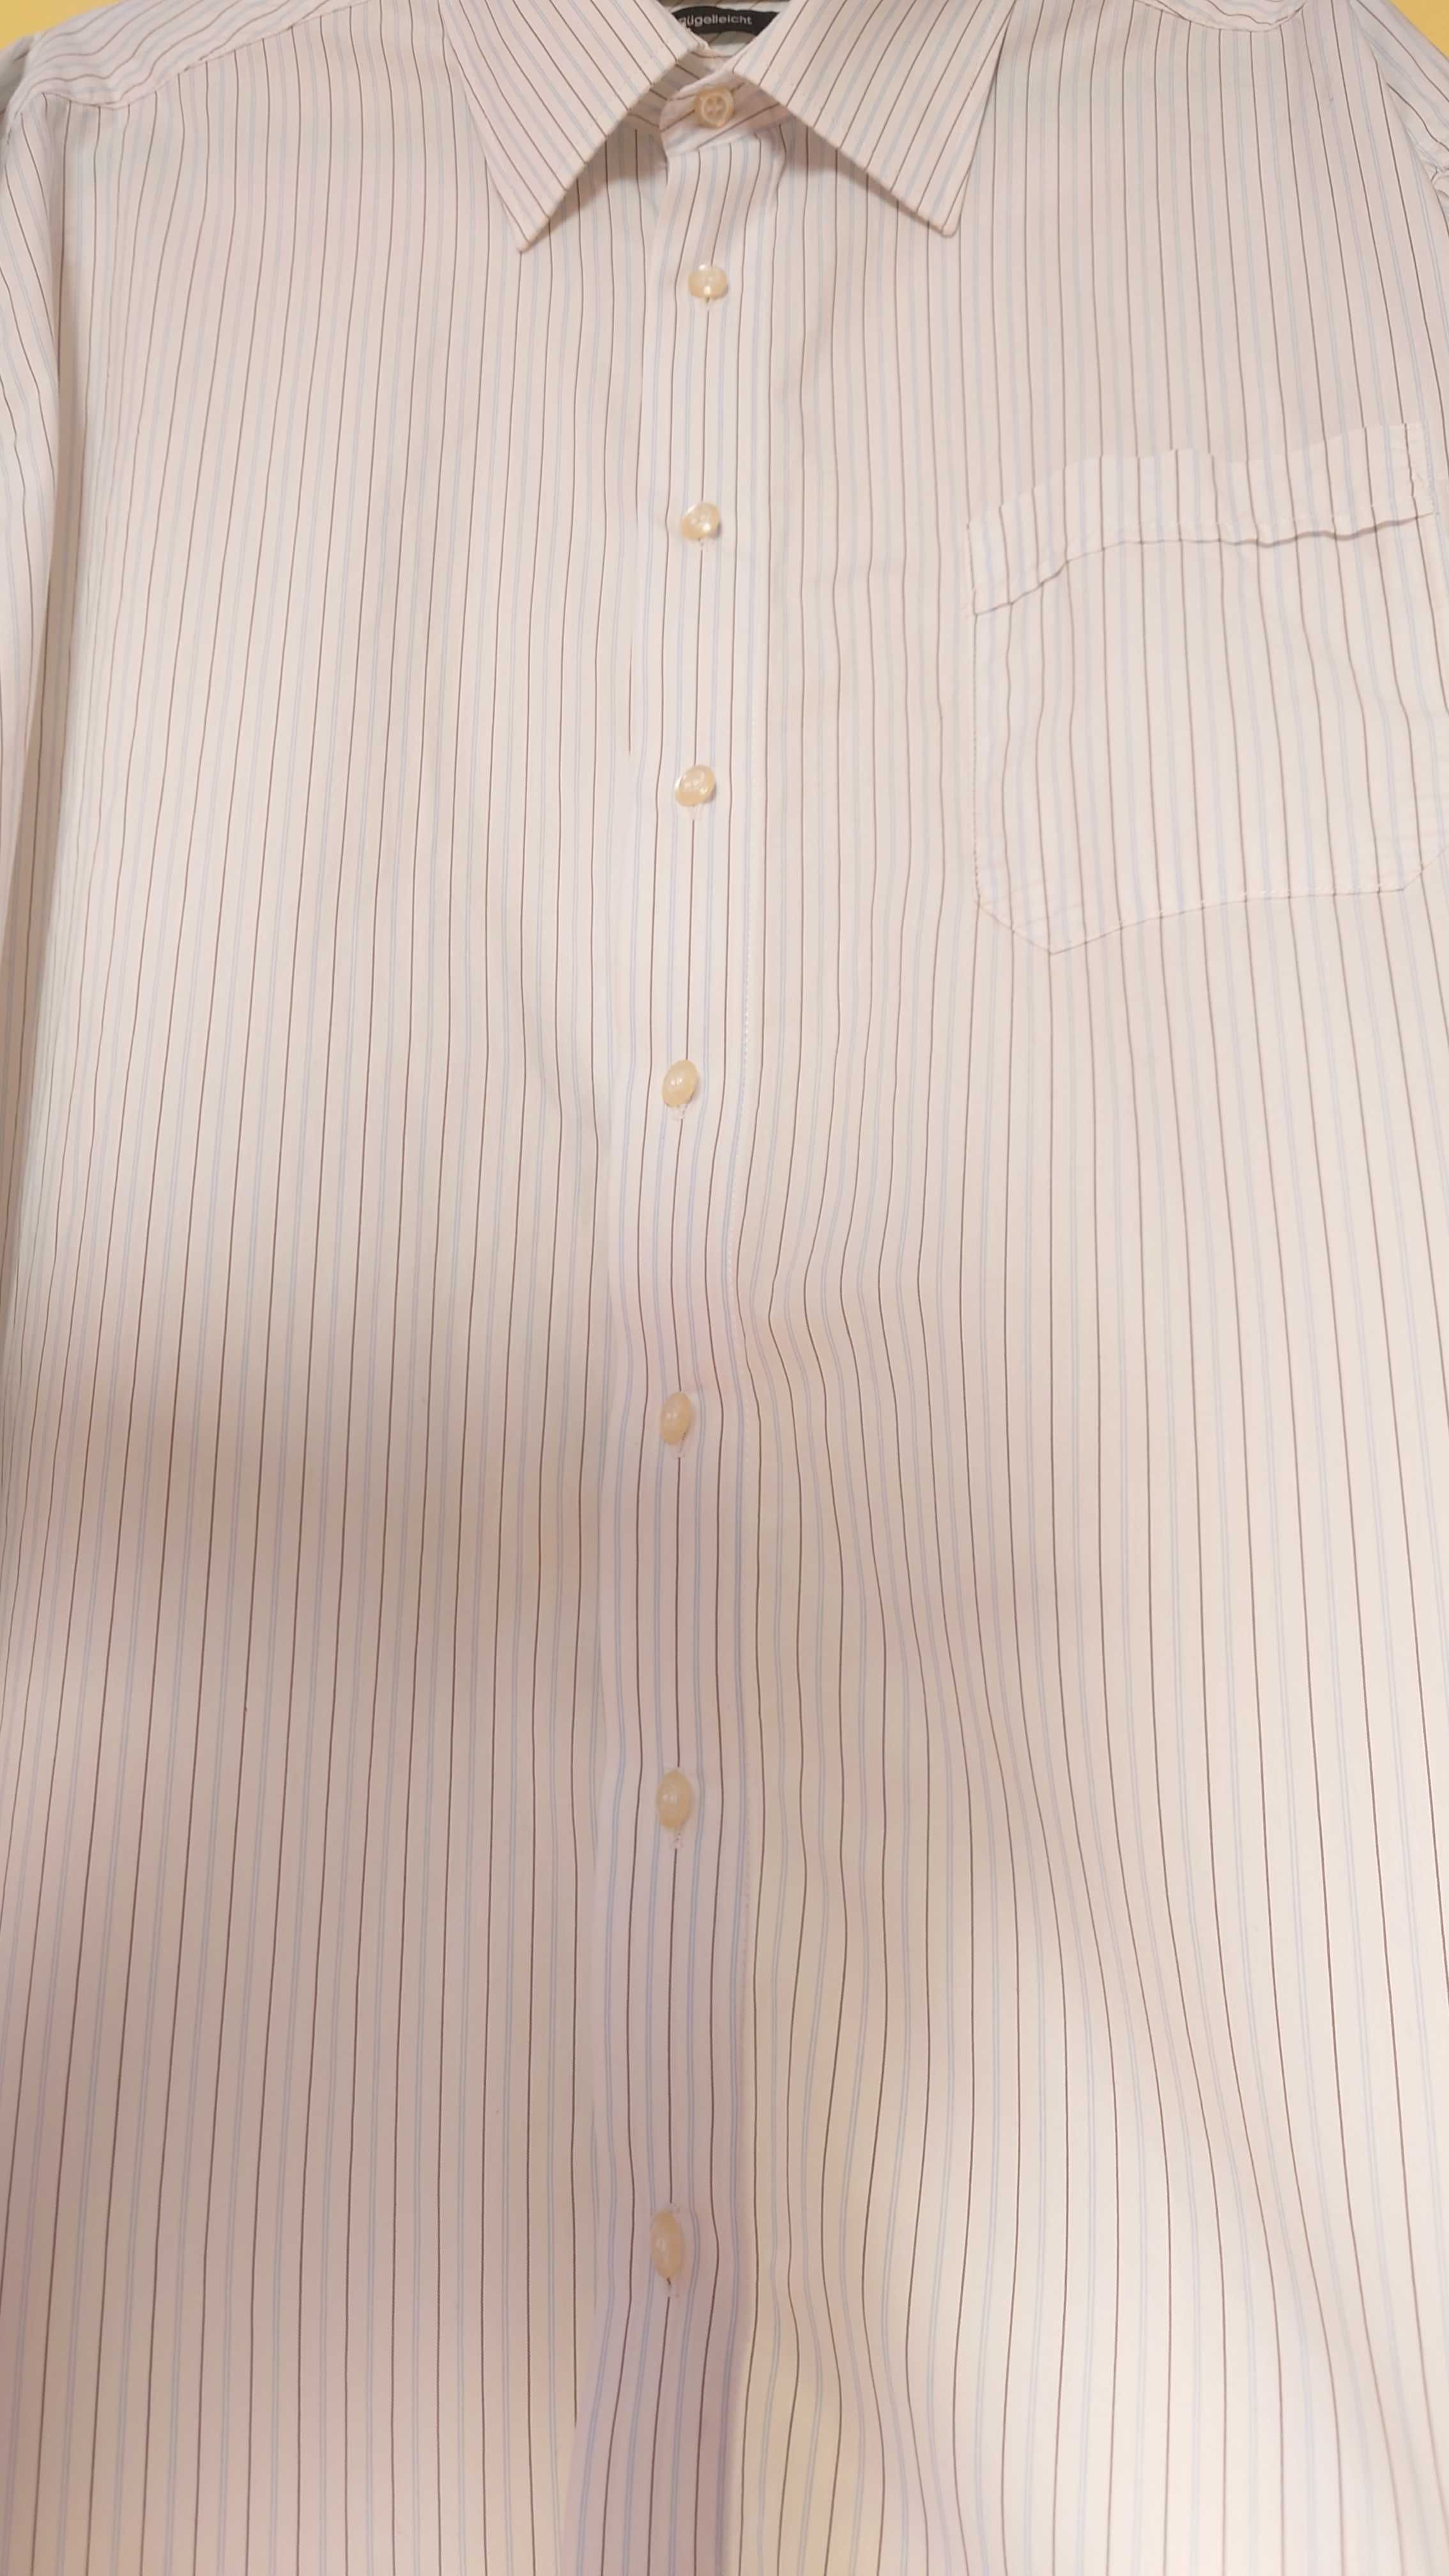 koszula męska biała w cienkie paski c. comberti rozmiar xxl